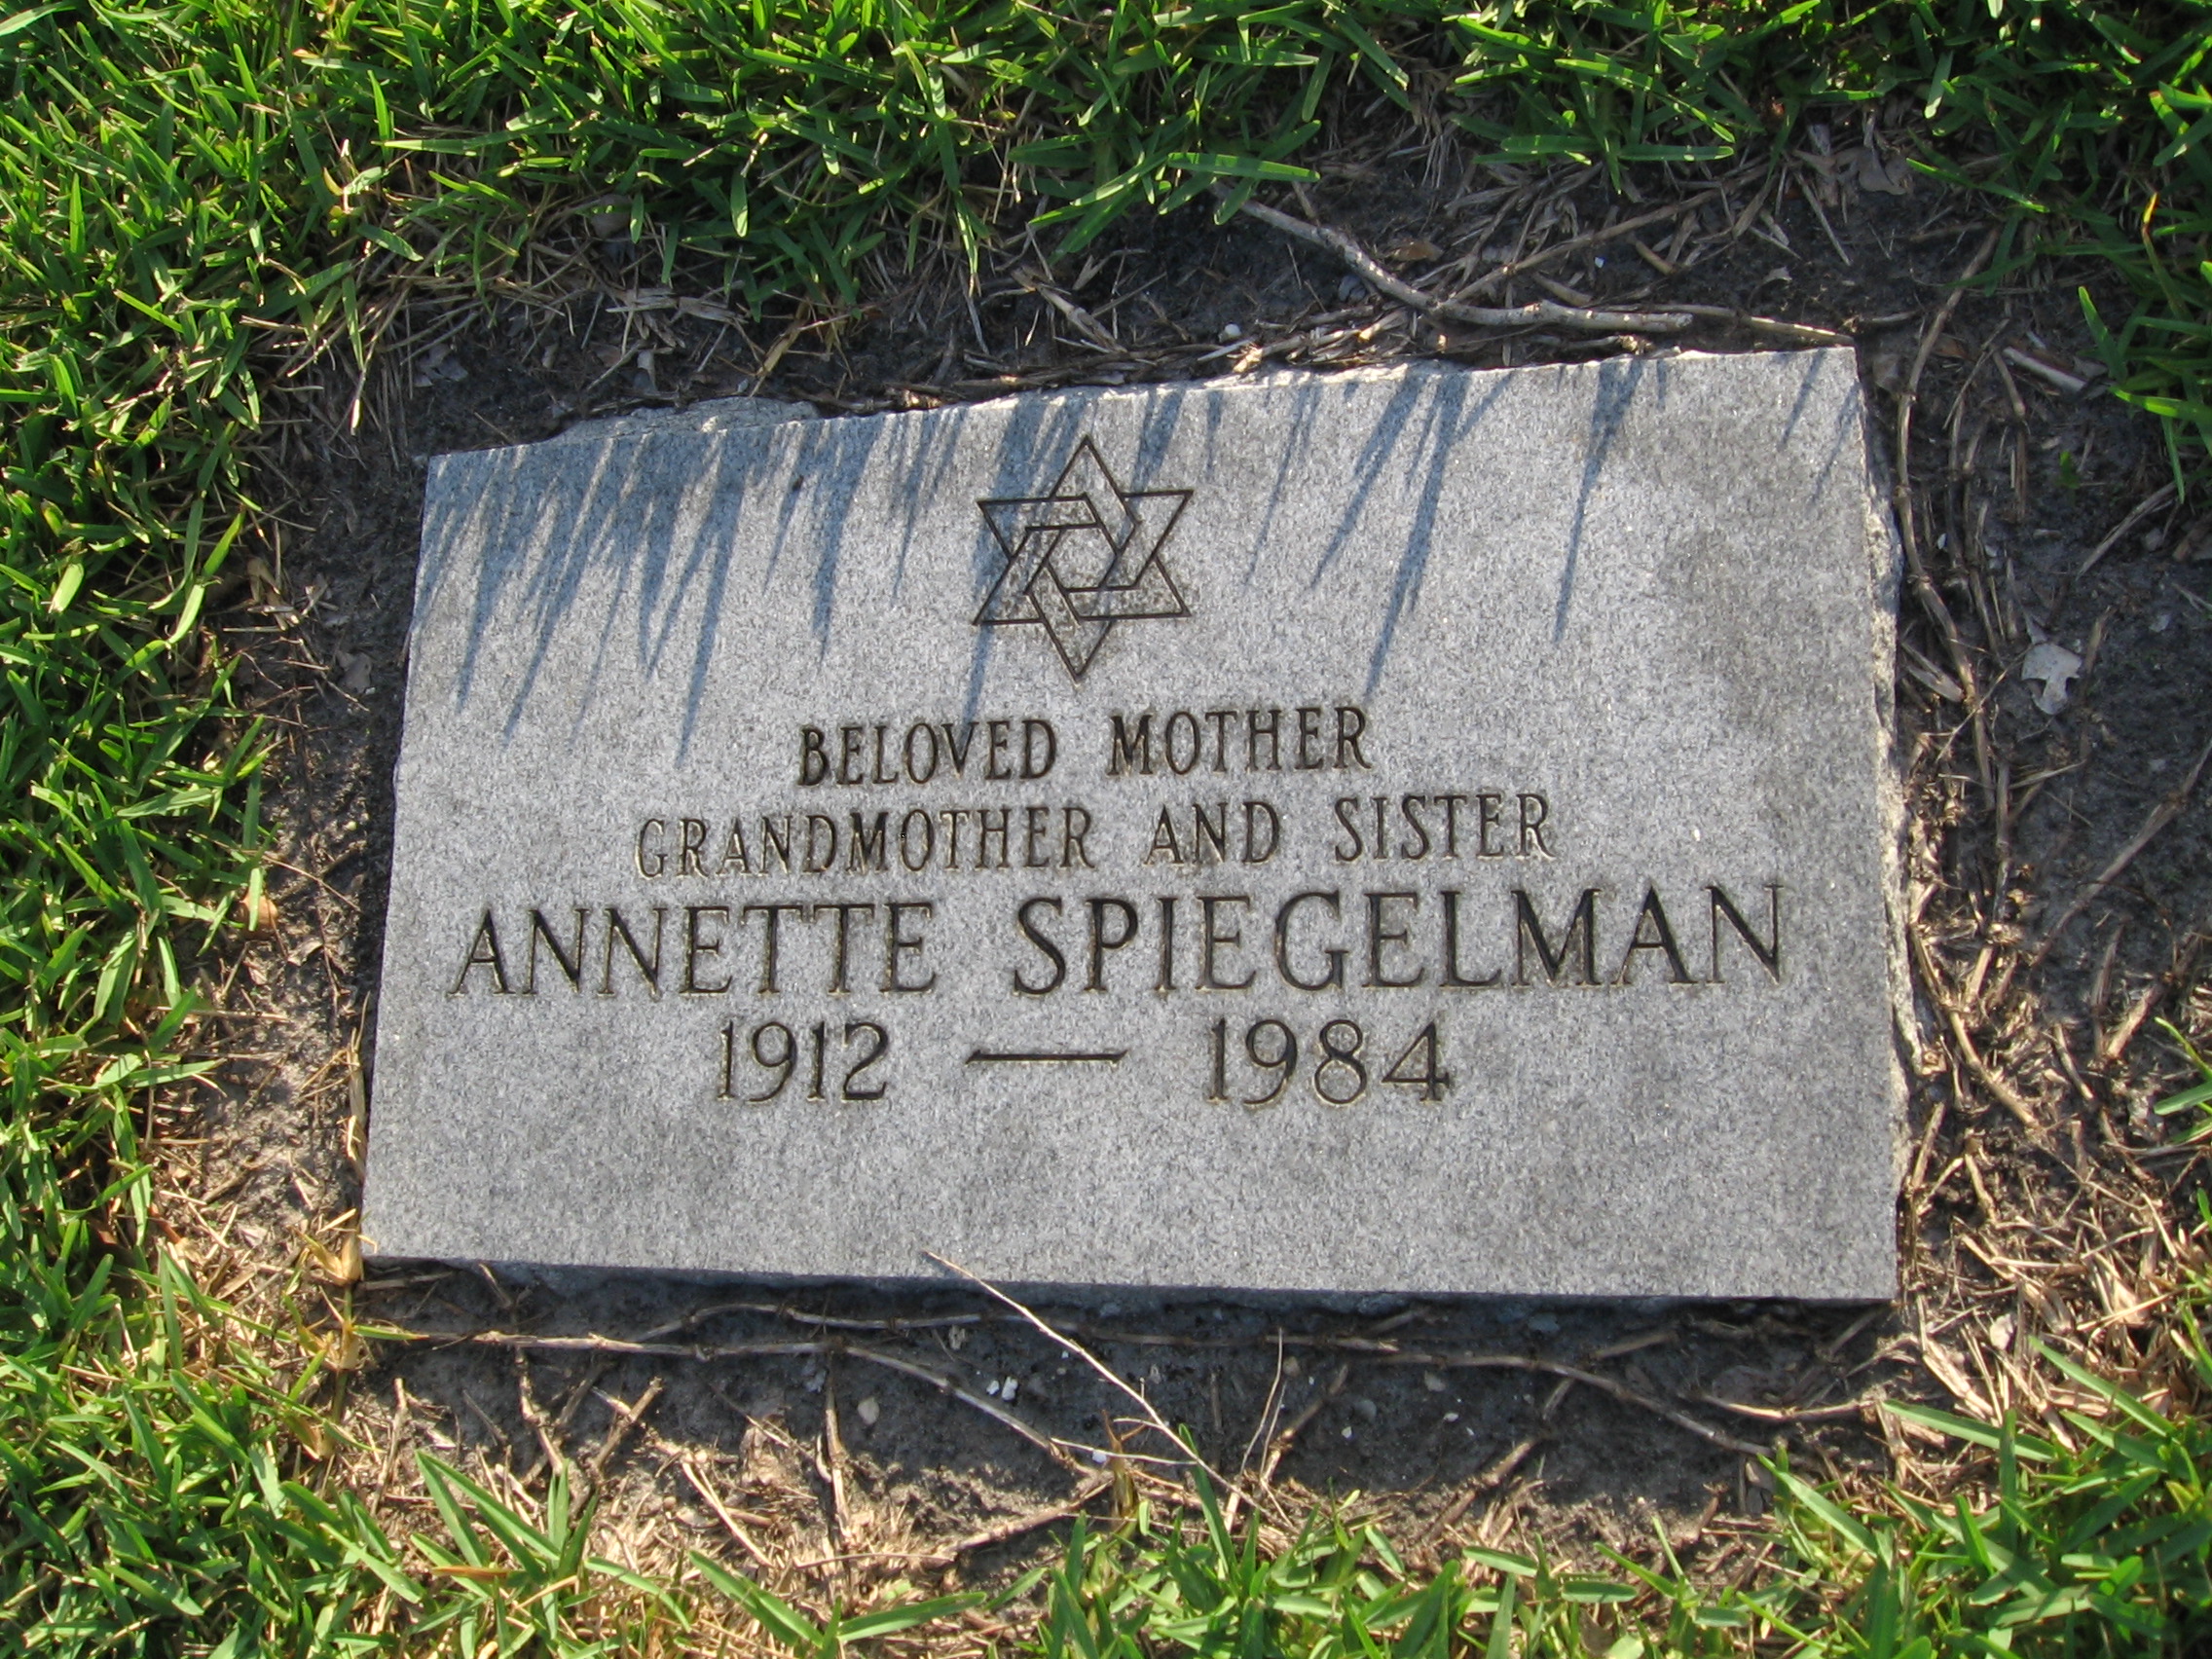 Annette Spiegelman